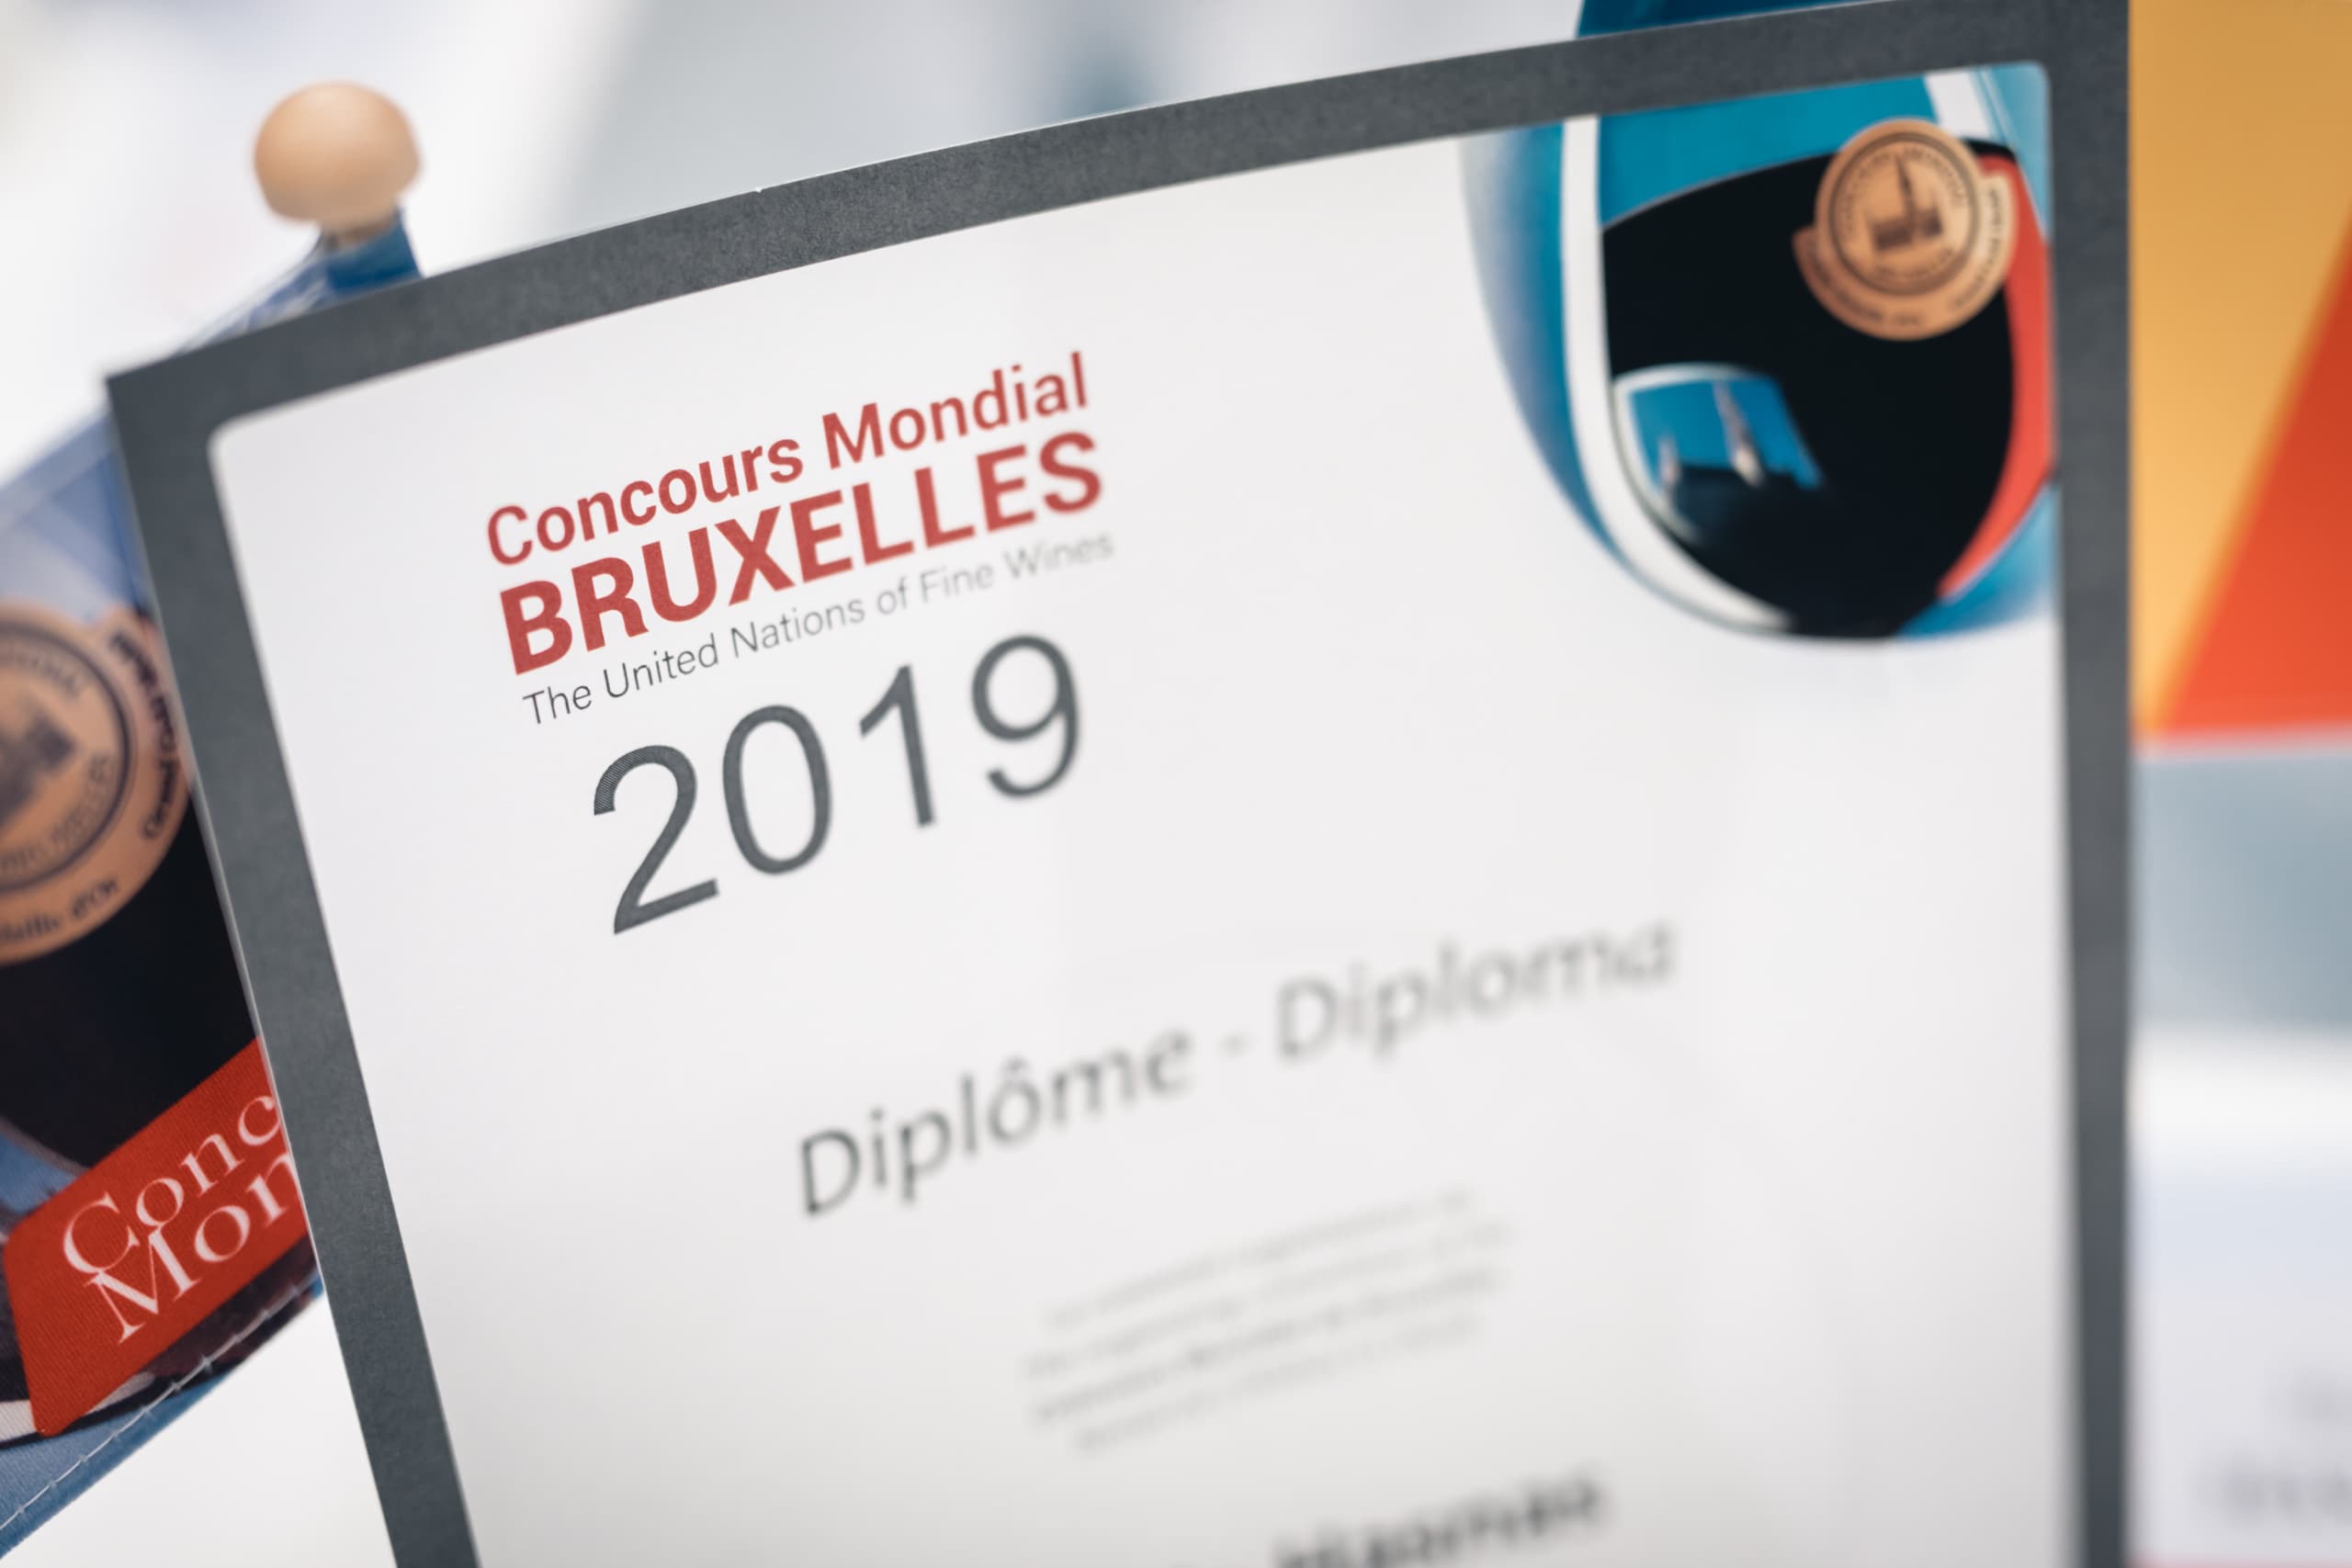 Concours Mondial de Bruxelles 2019 certificate